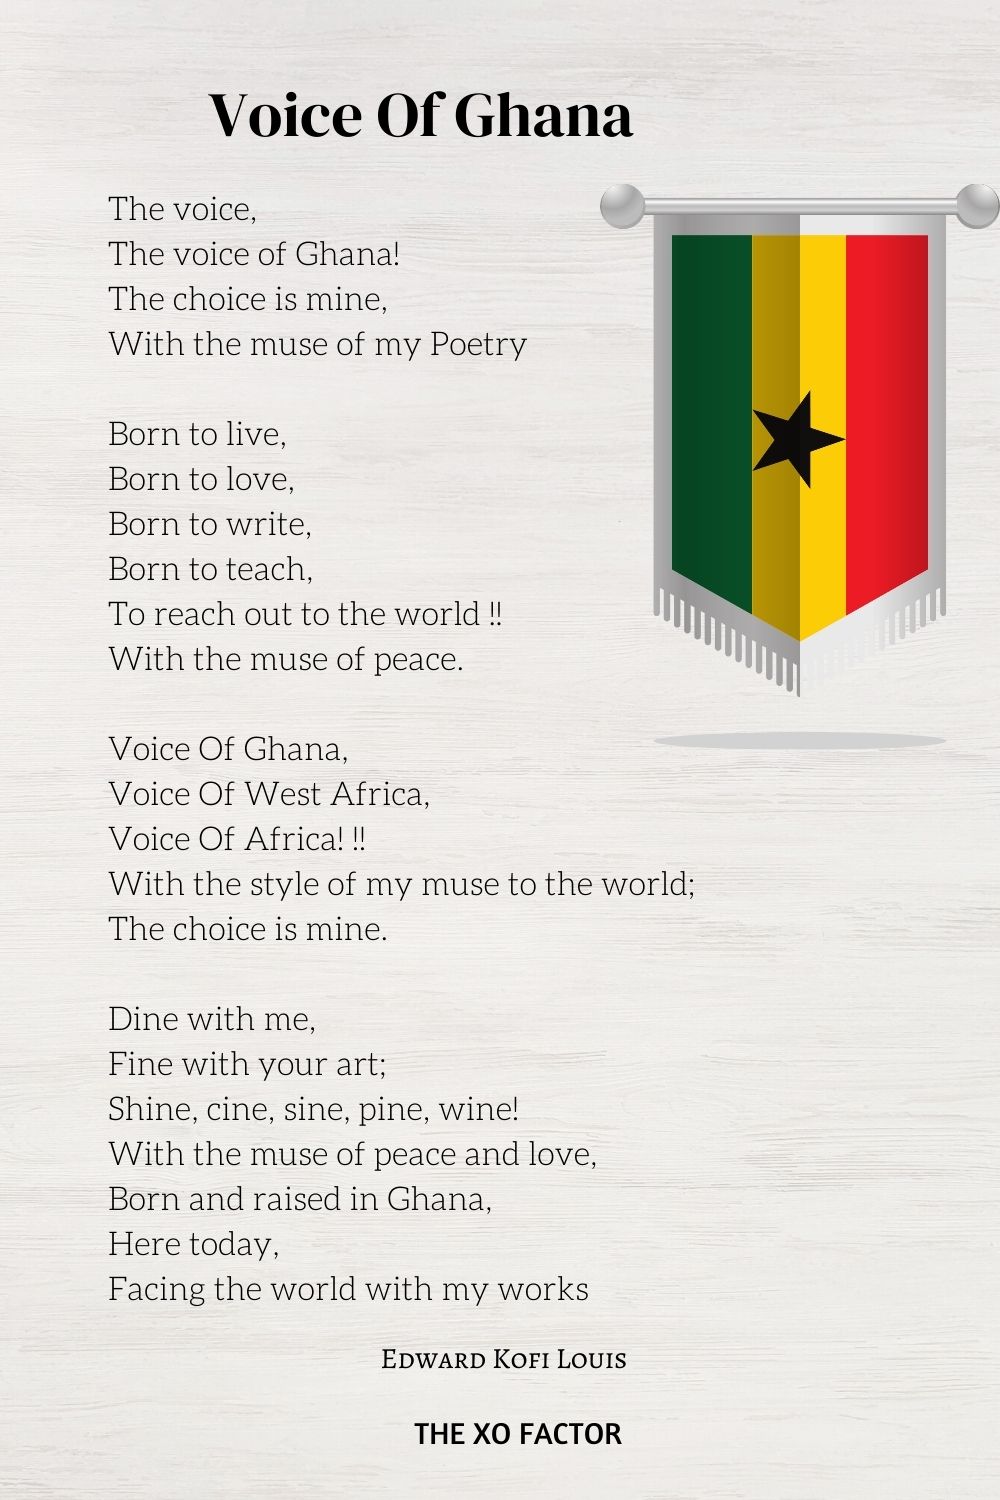 Voice Of Ghana by Edward Kofi Louis